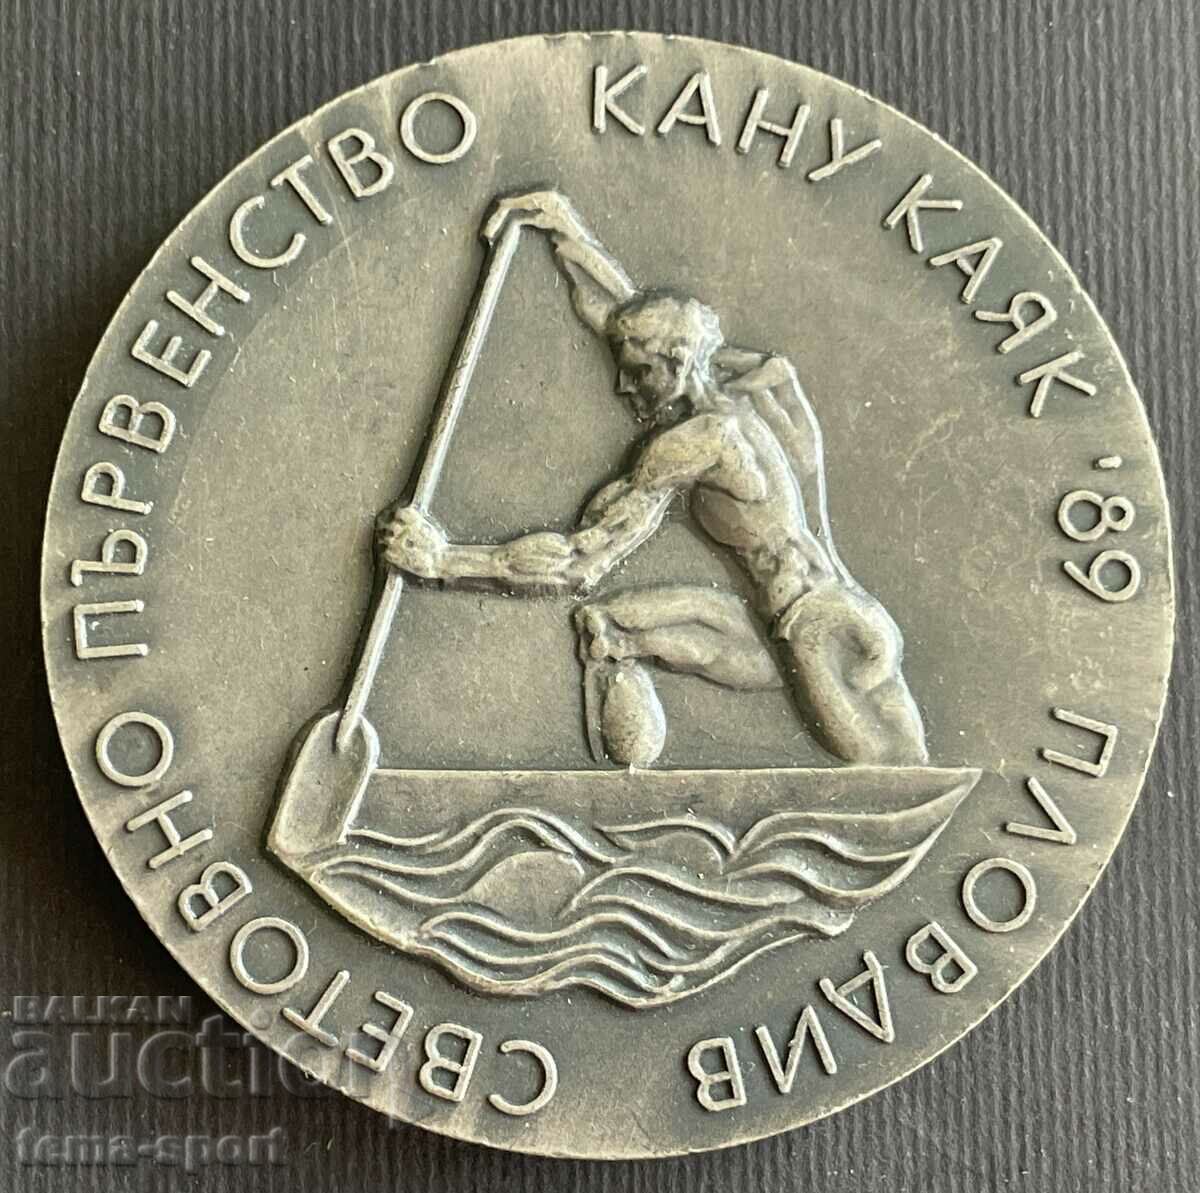 45 Πλακέτα Βουλγαρίας Παγκόσμιο Πρωτάθλημα Κανόε Καγιάκ Πλόβντιβ 198